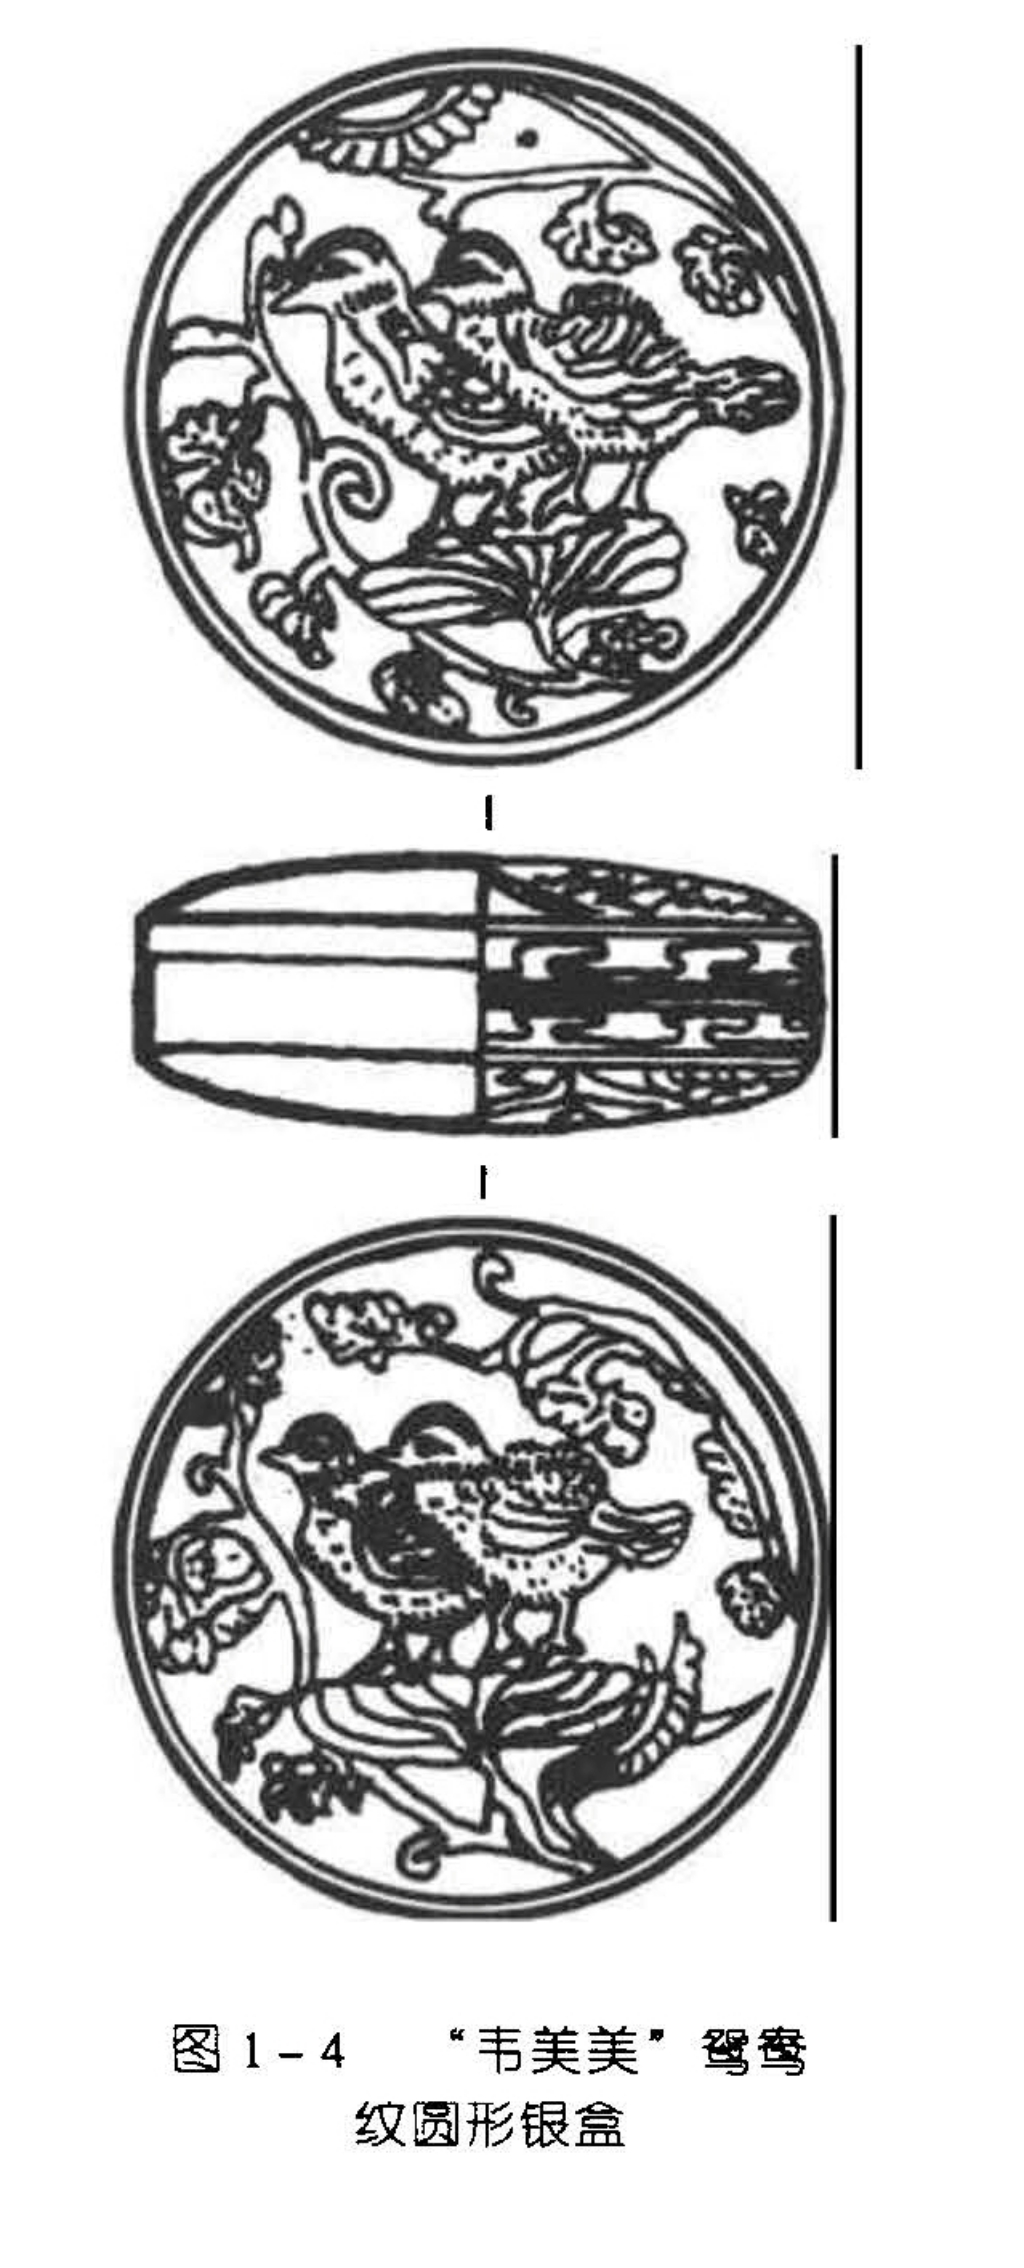 图1-4 “韦美美”鸳鸯 纹圆形银盒